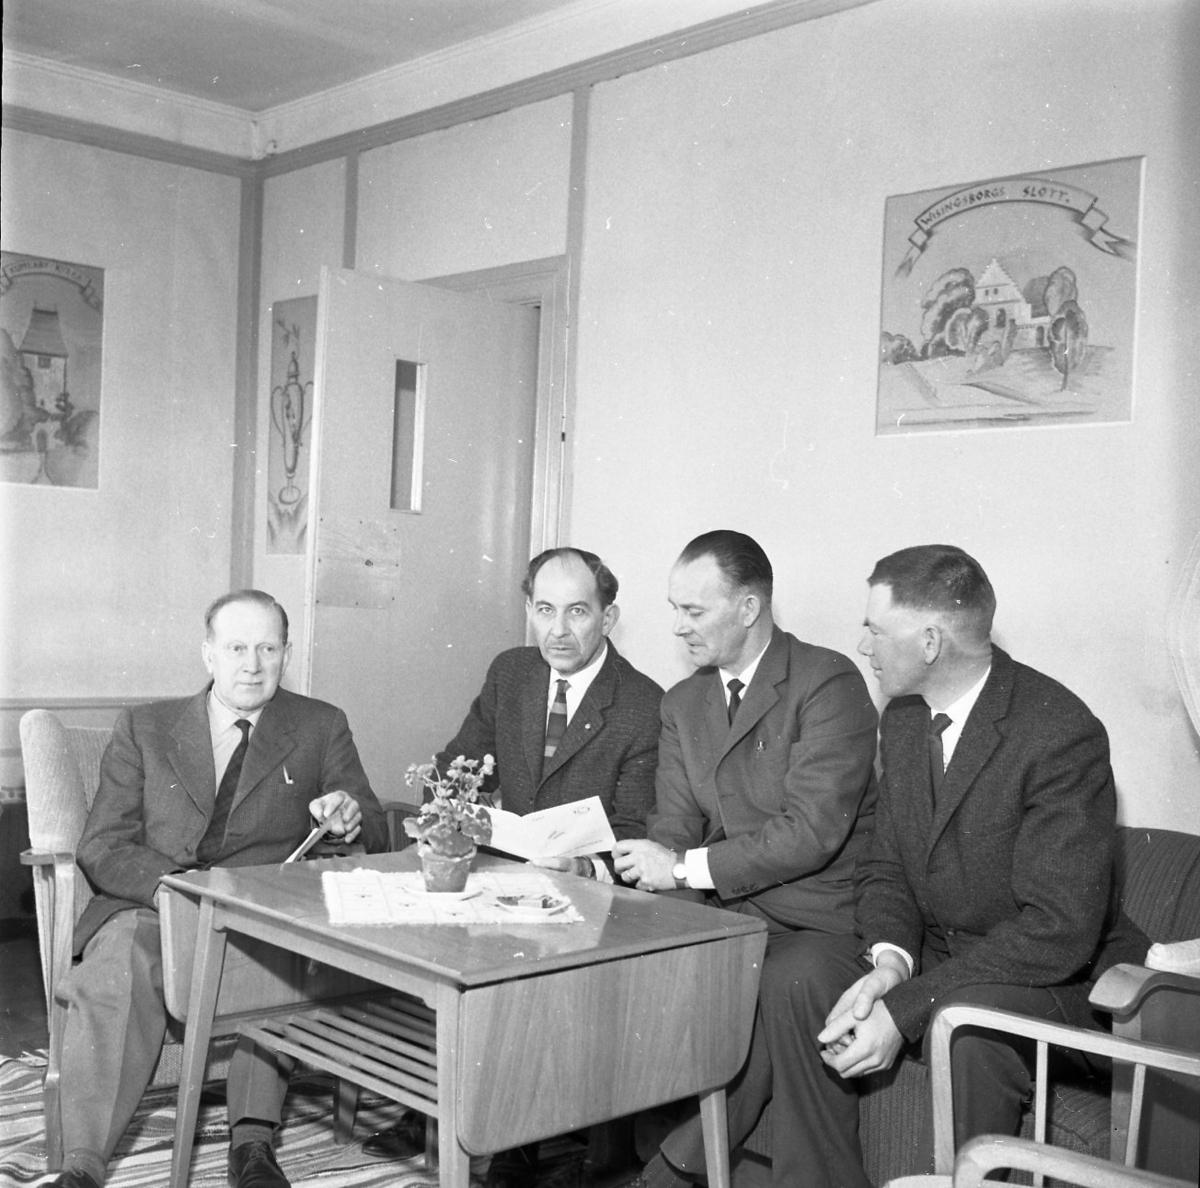 Fyra män sitter i en soffgrupp. De har något prospekt framför sig. De befinner sig möjligen på Hotell Brahe. Från vänster: Albert Svensson, okänd, Erling Krantz samt Sven Ekström.